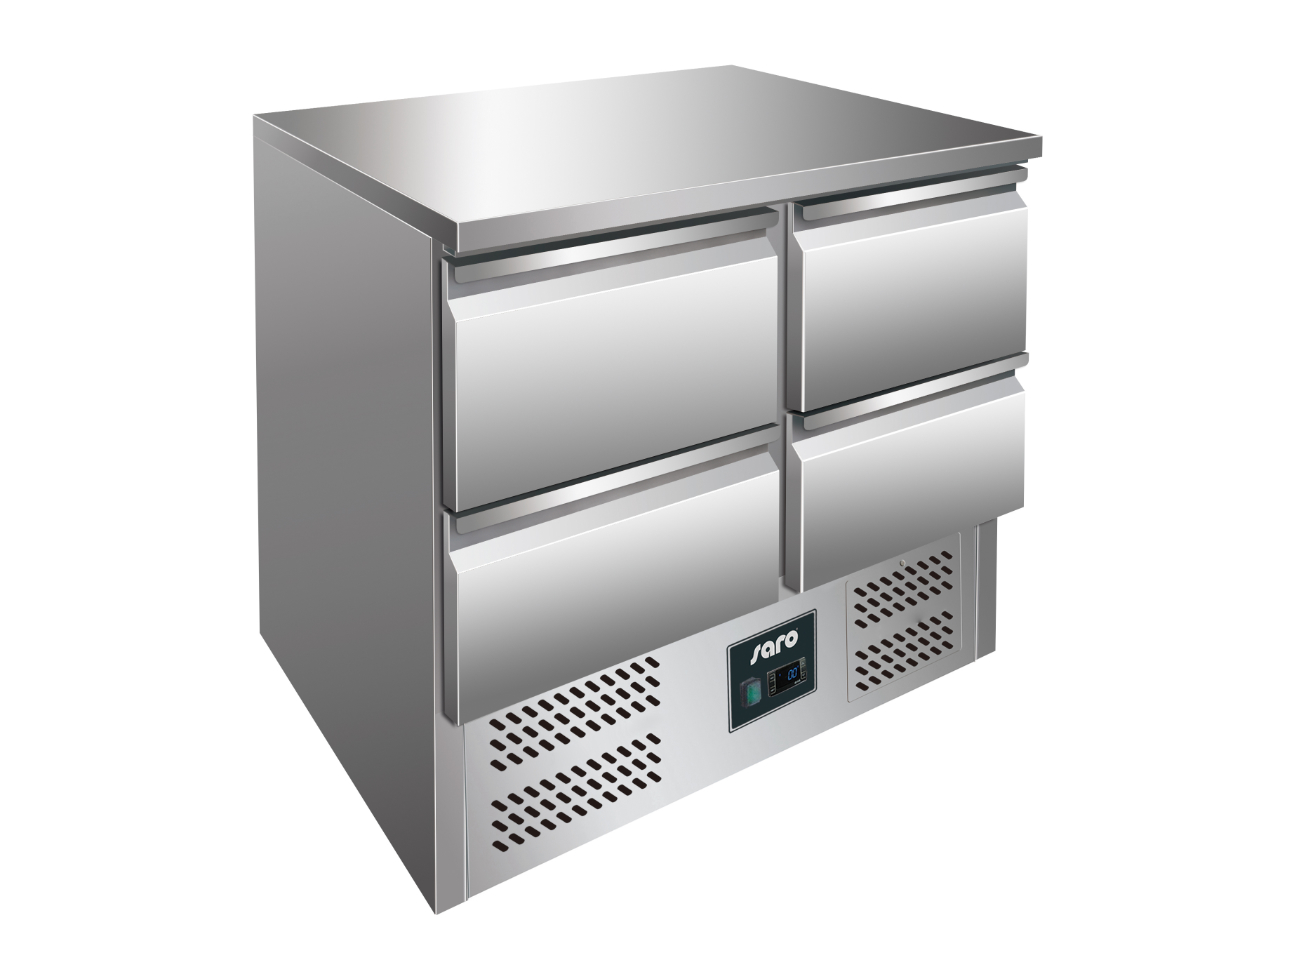 SARO Kühltisch mit Schubladen Modell VIVIA S 901 S/S TOP - 4 x 1/2 GN